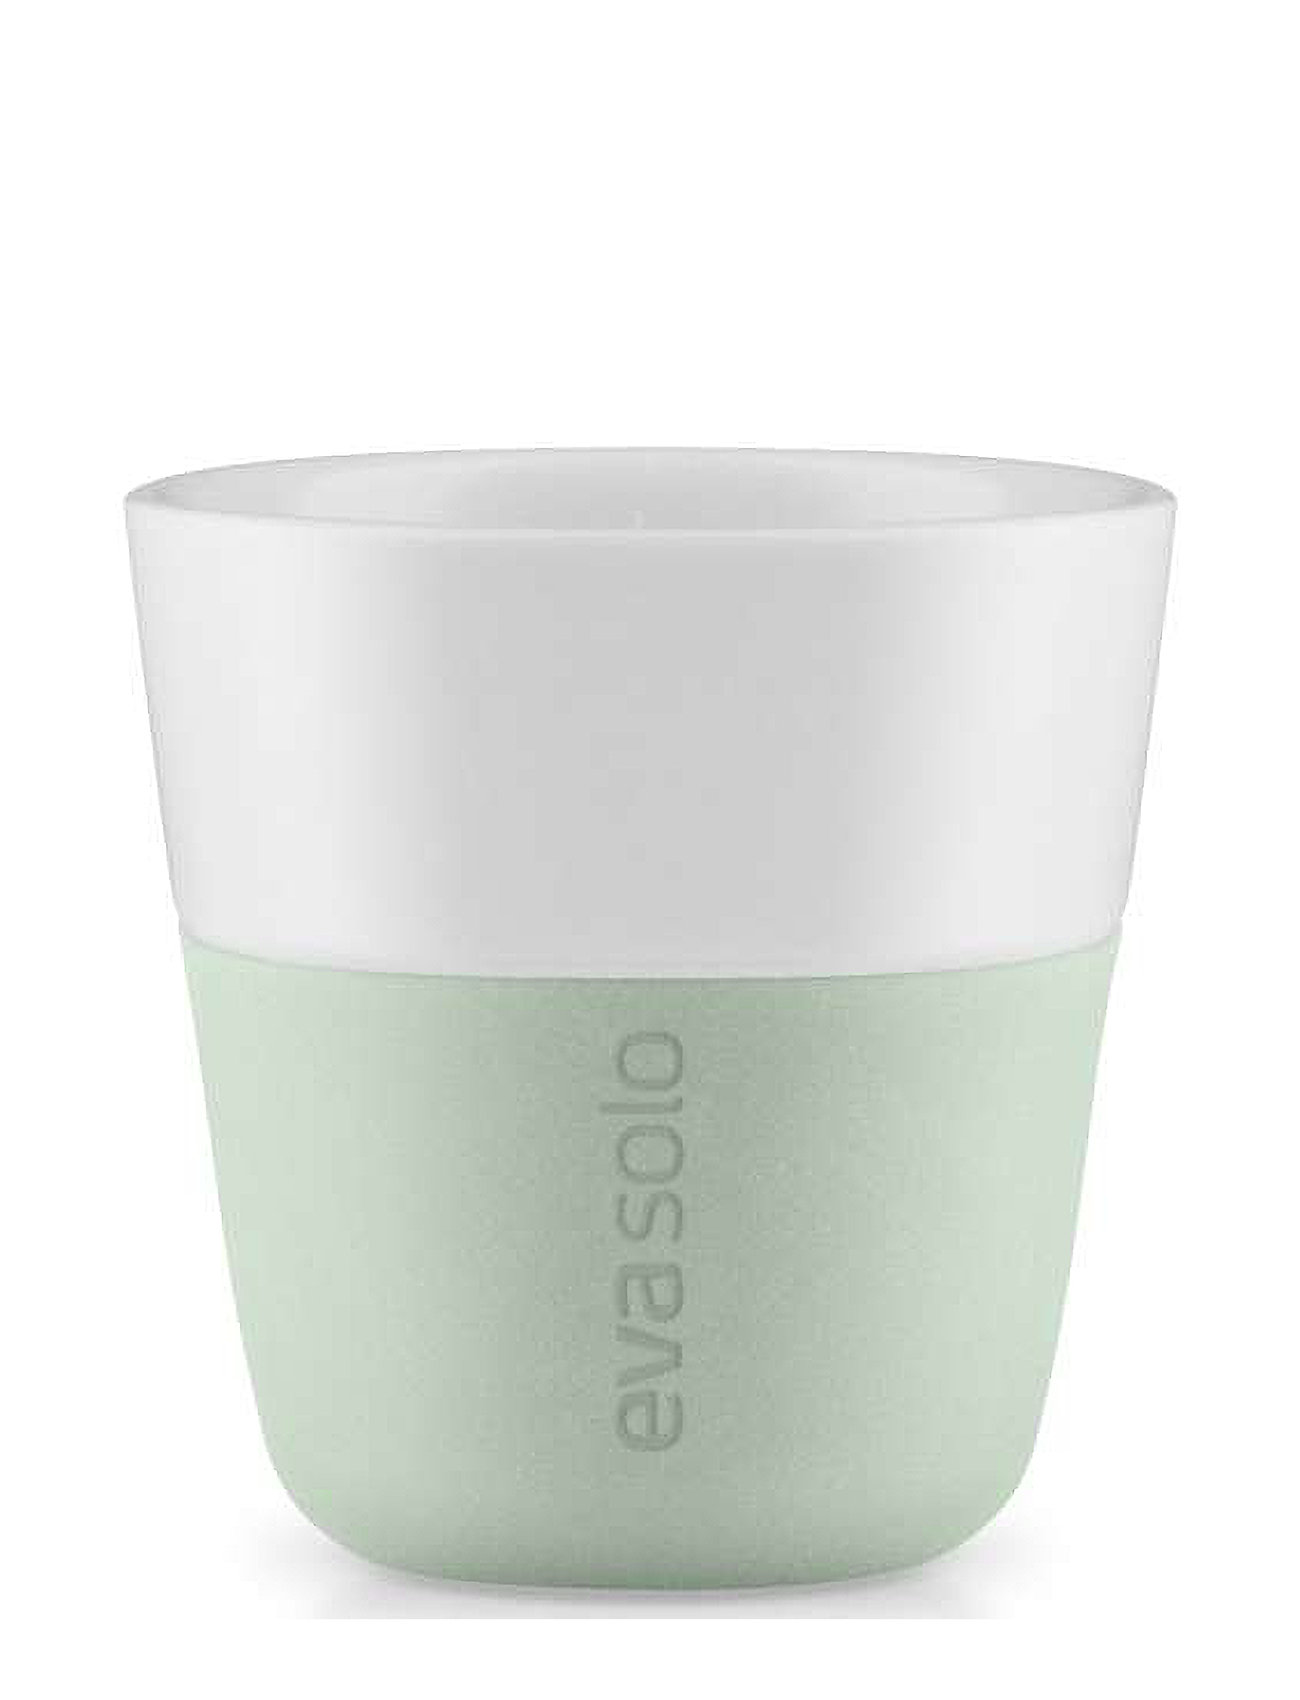 2 Espresso-Krus Sage Home Tableware Cups & Mugs Espresso Cups Green Eva Solo